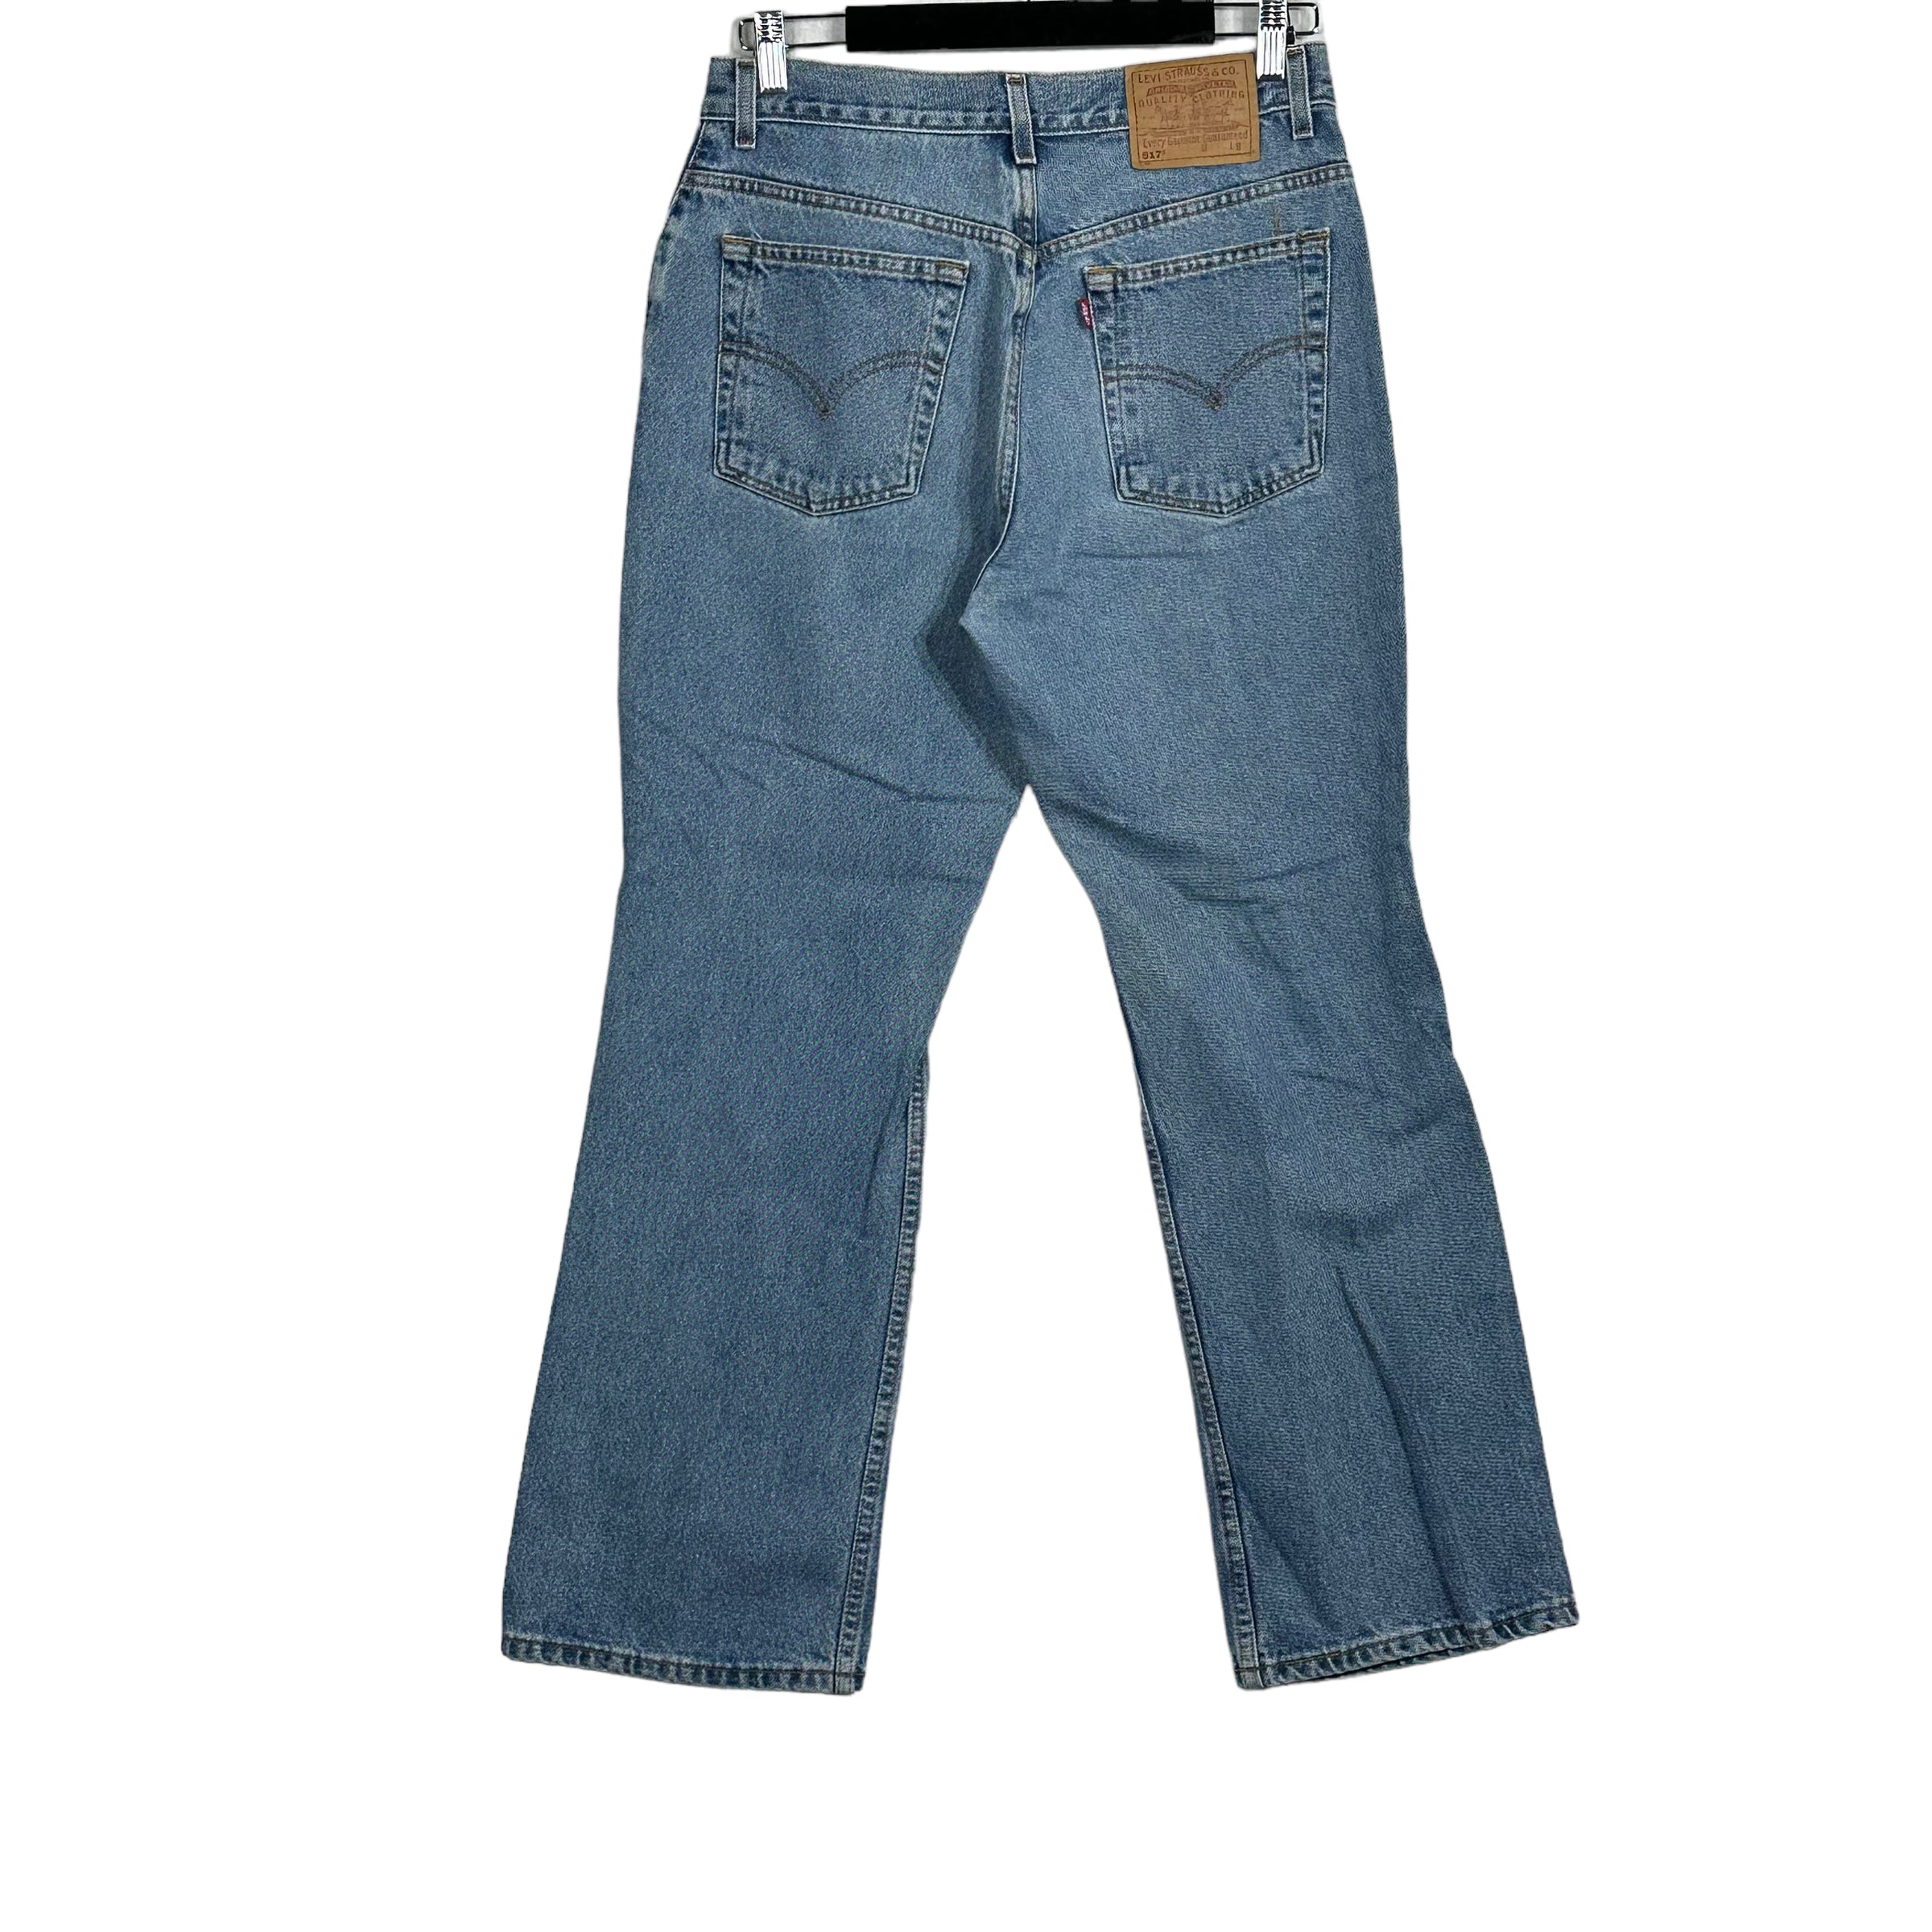 Vintage Levis 517 Boot Cut Low Rise Jeans